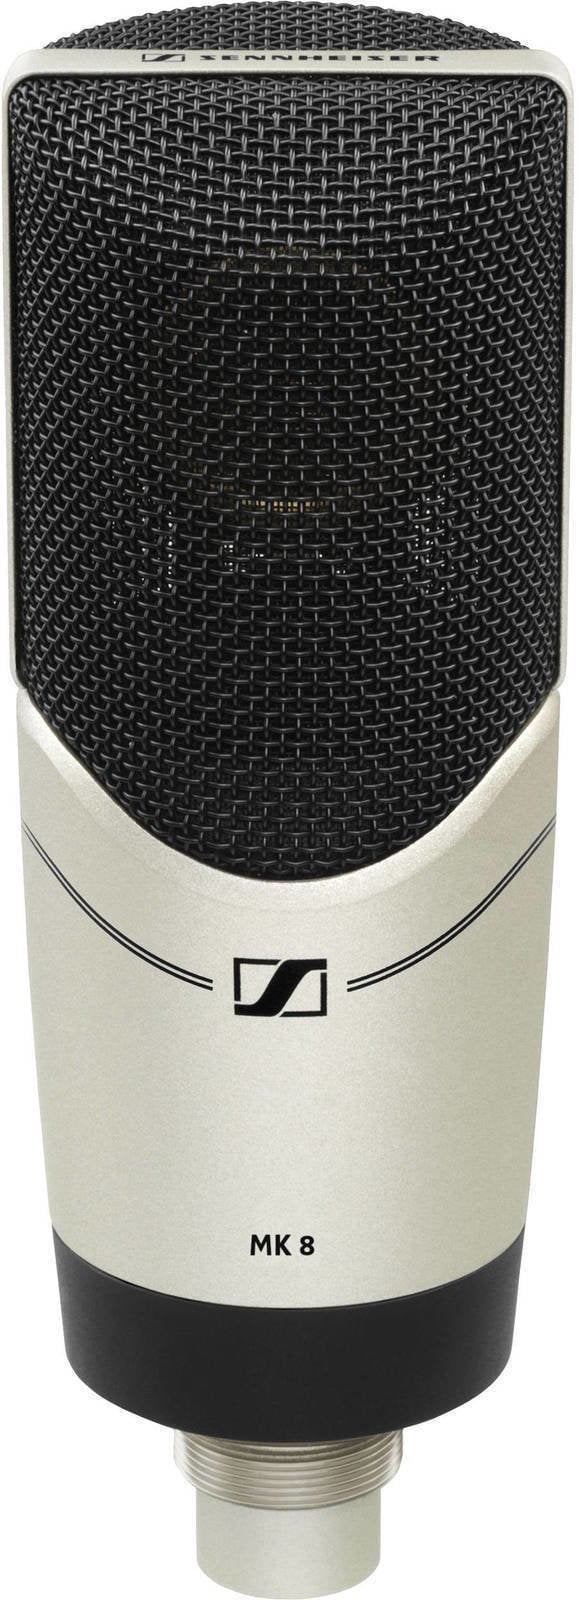 Studio Condenser Microphone Sennheiser MK 8 Studio Condenser Microphone